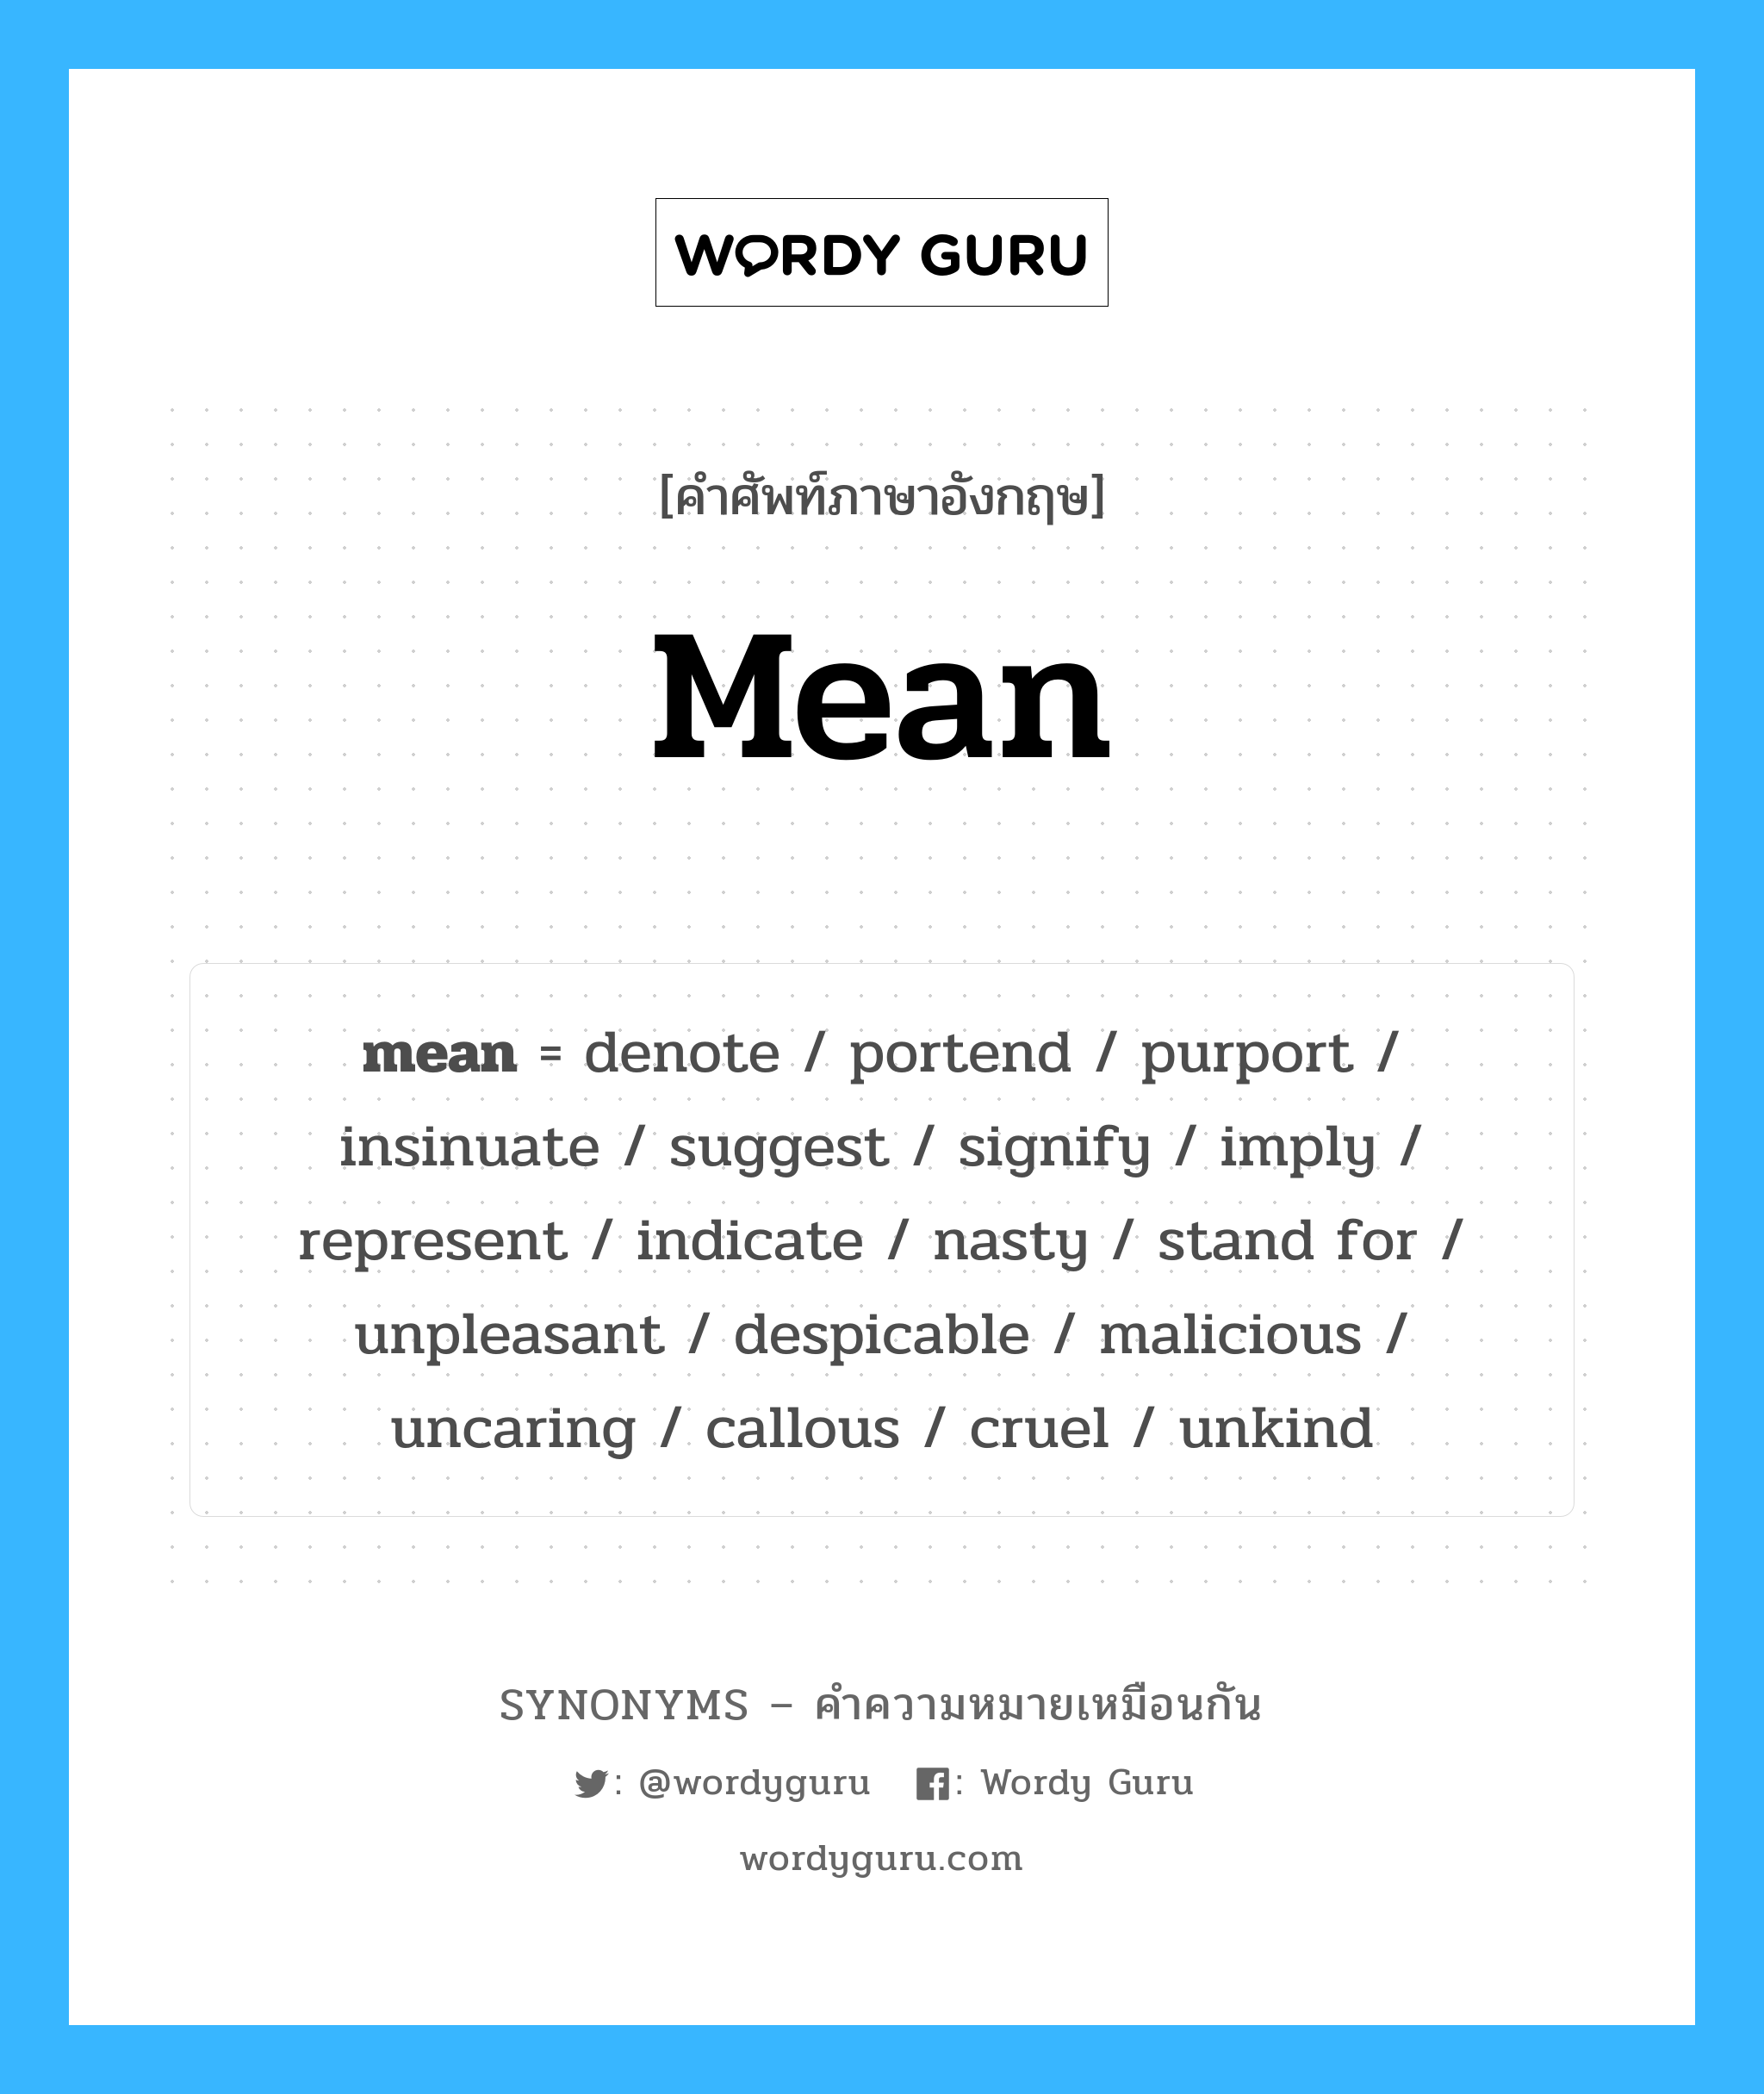 mean เป็นหนึ่งใน uncaring และมีคำอื่น ๆ อีกดังนี้, คำศัพท์ภาษาอังกฤษ mean ความหมายคล้ายกันกับ uncaring แปลว่า ใจจืดใจดำ หมวด uncaring